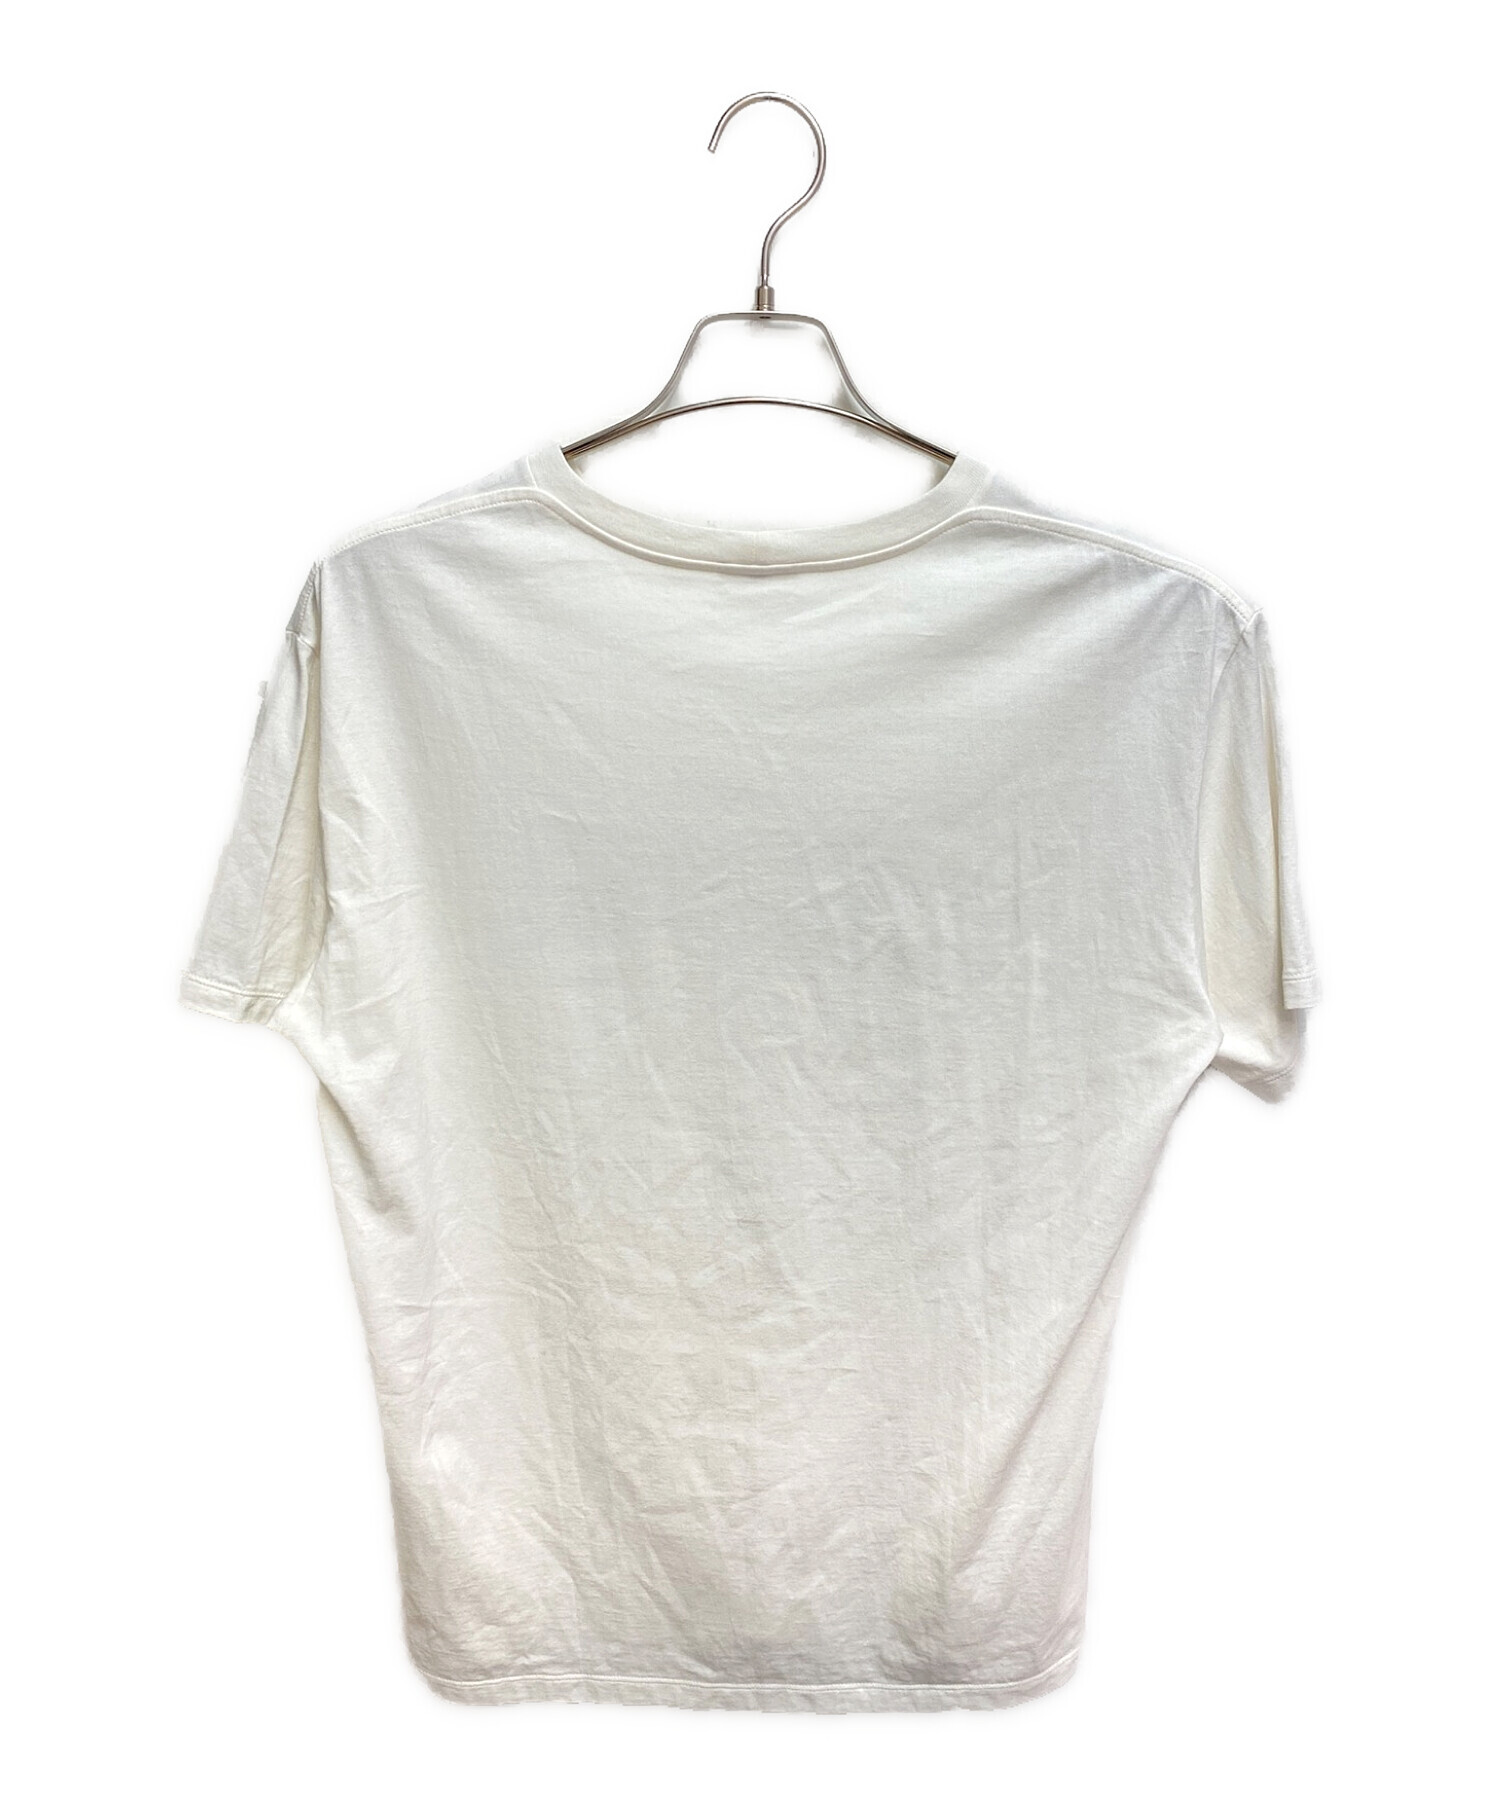 CELINE　カットソー　セリーヌ　Tシャツ　イタリア製　ヴィンテージ　半袖